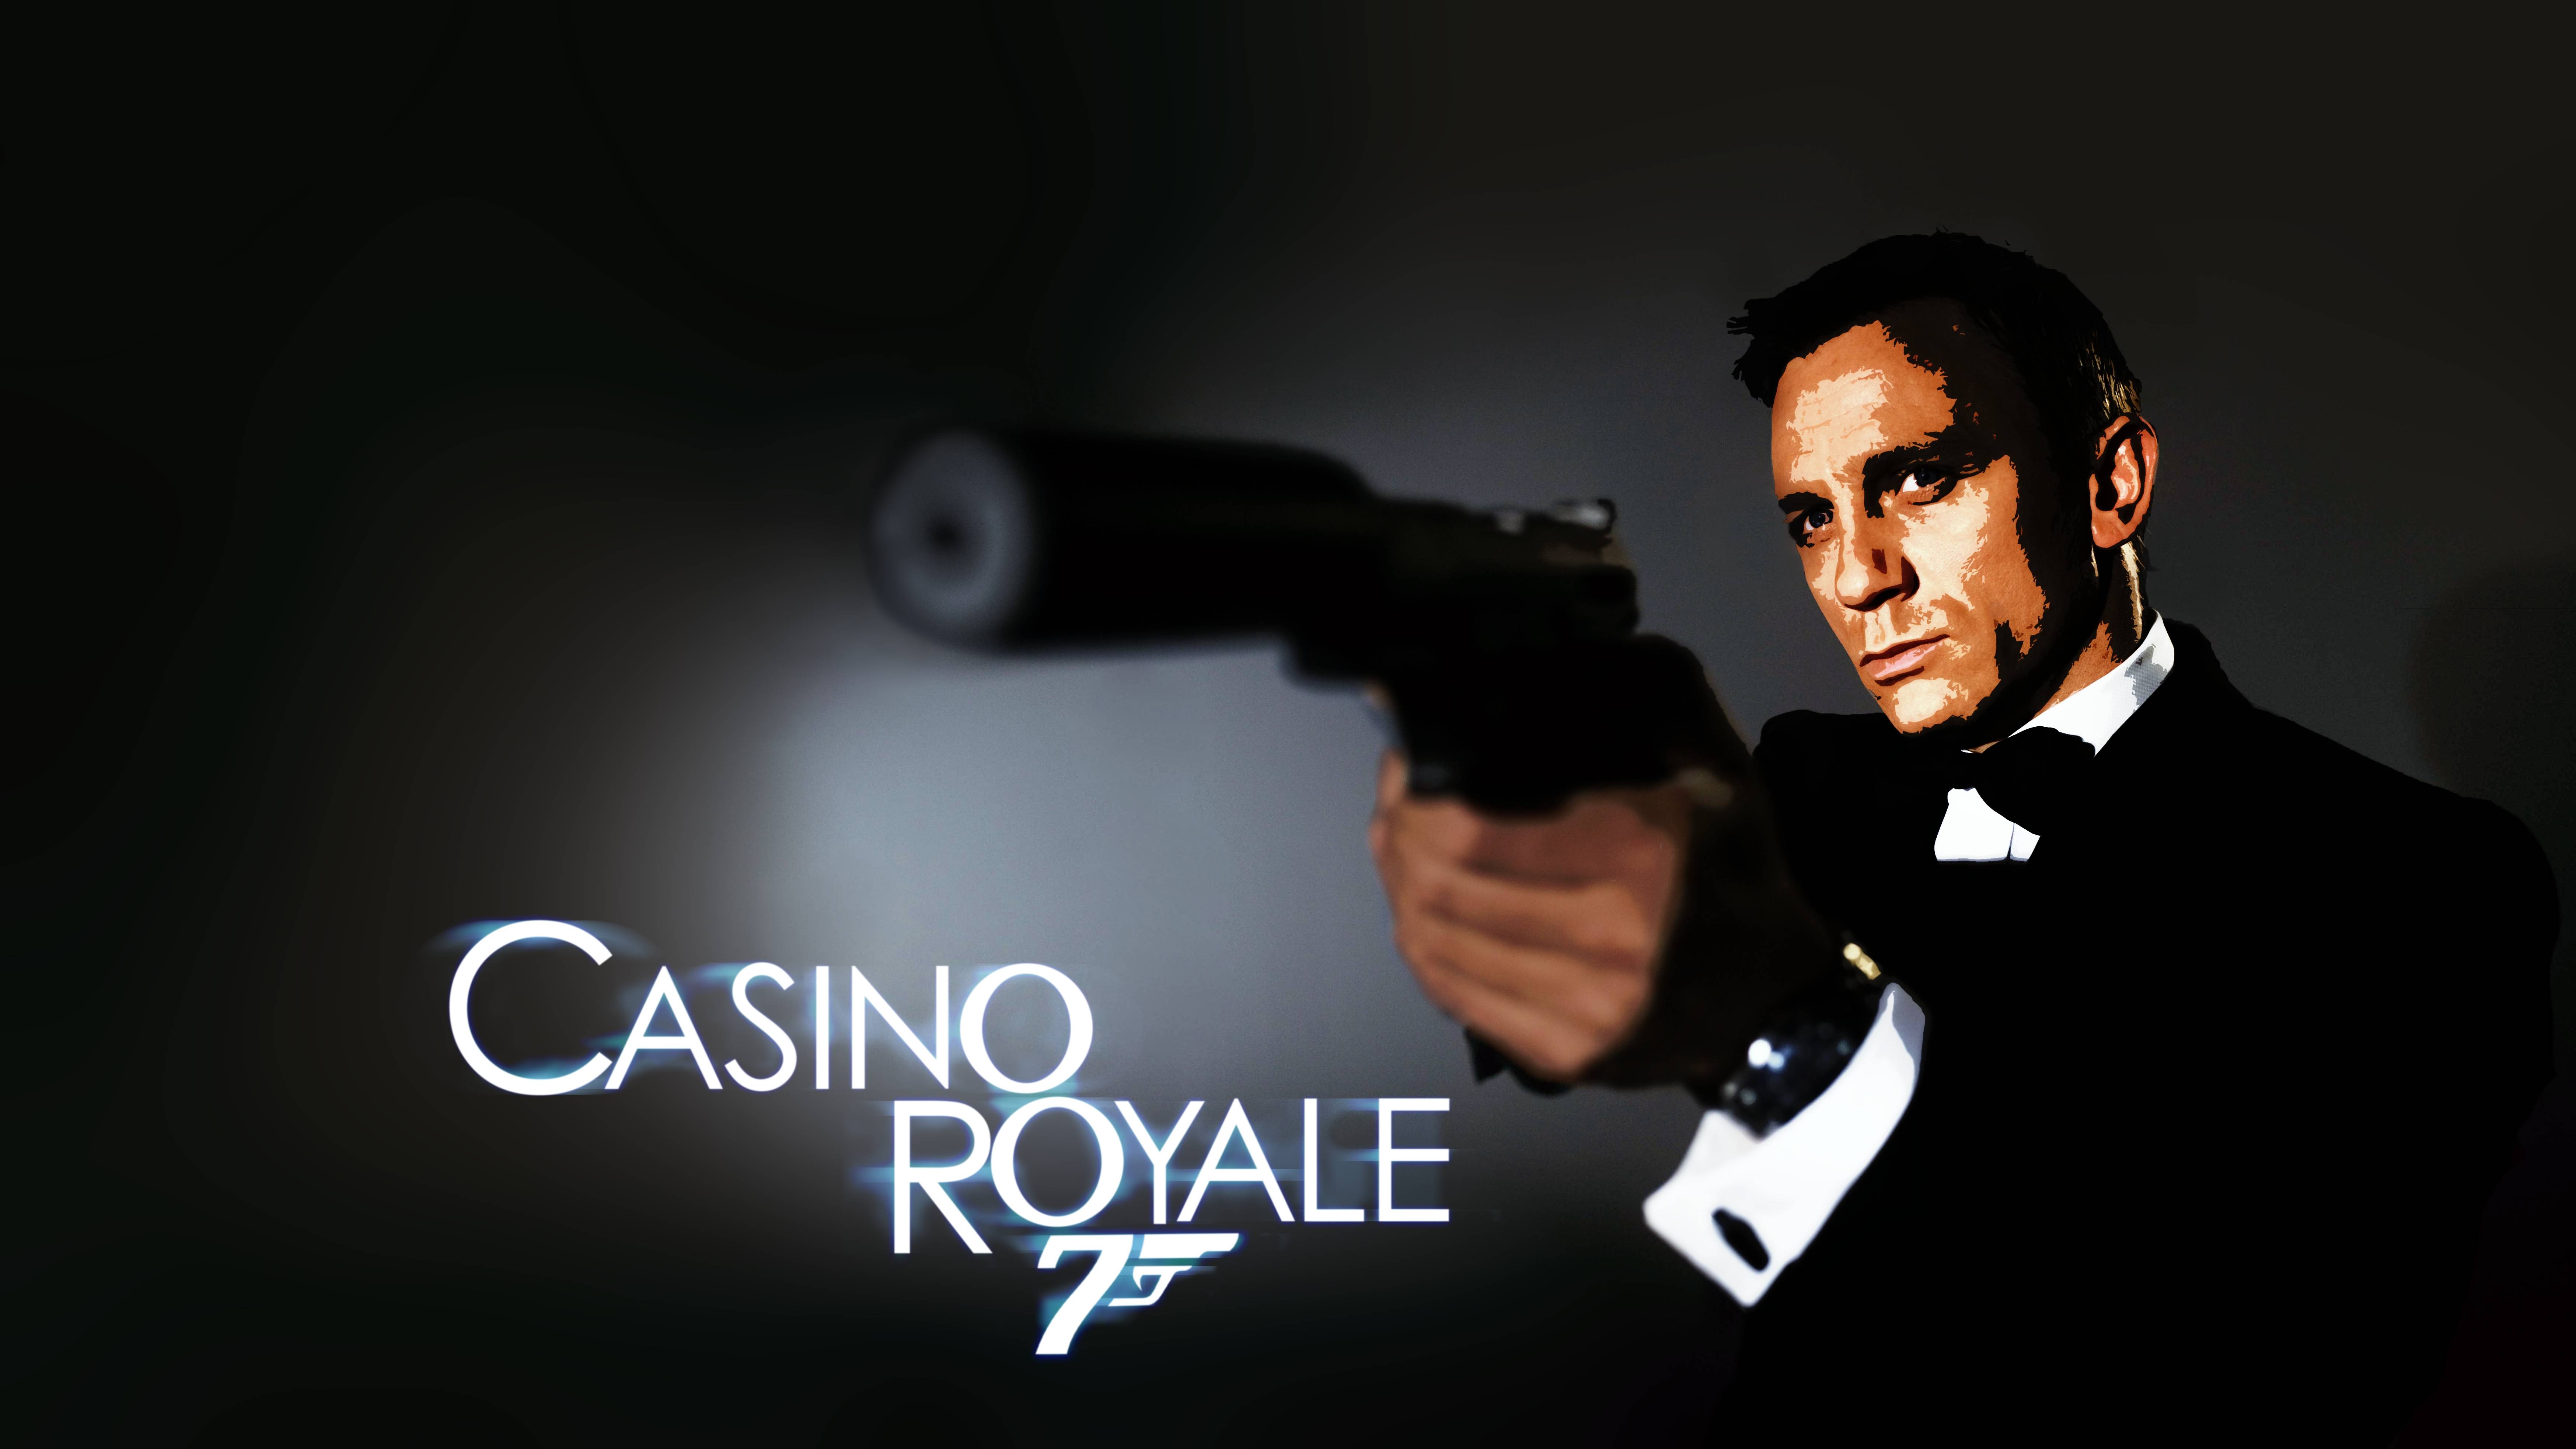 007 casino royal без смс сигареты джекпот